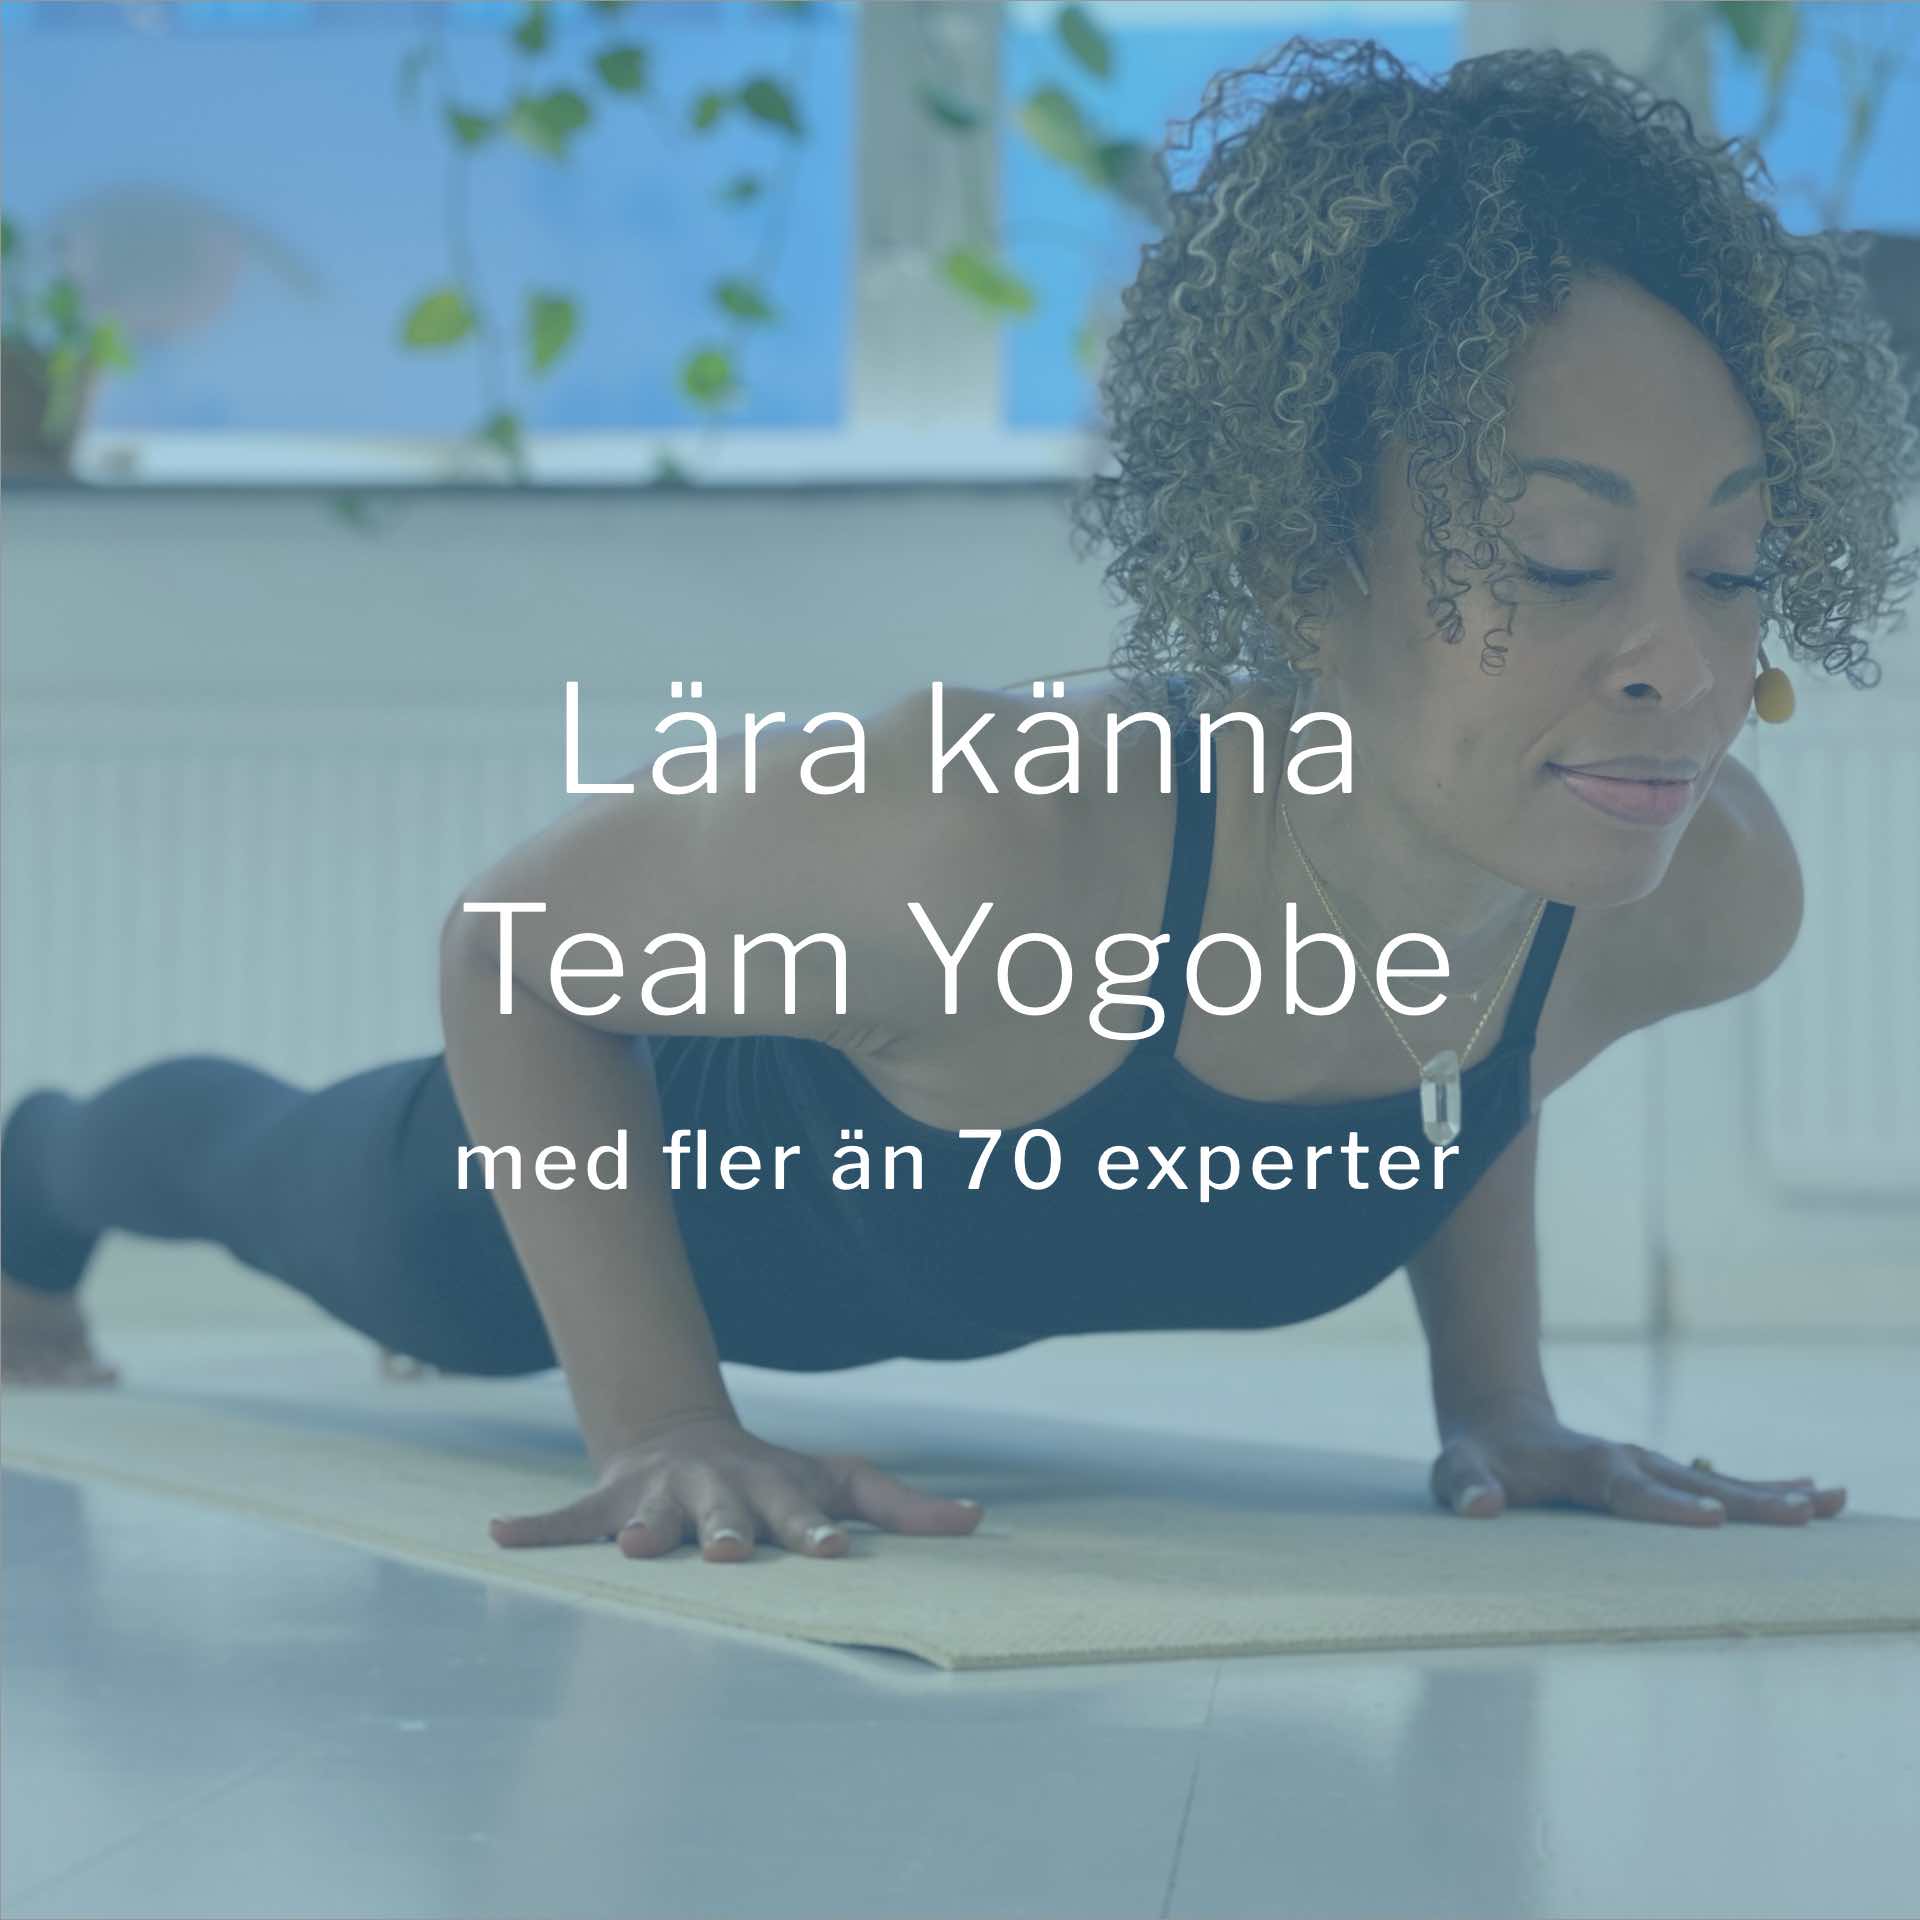 Lär känna Team Yogobe - med över 90 exeperter och lärare inom yoga, träning, meditation och andning.